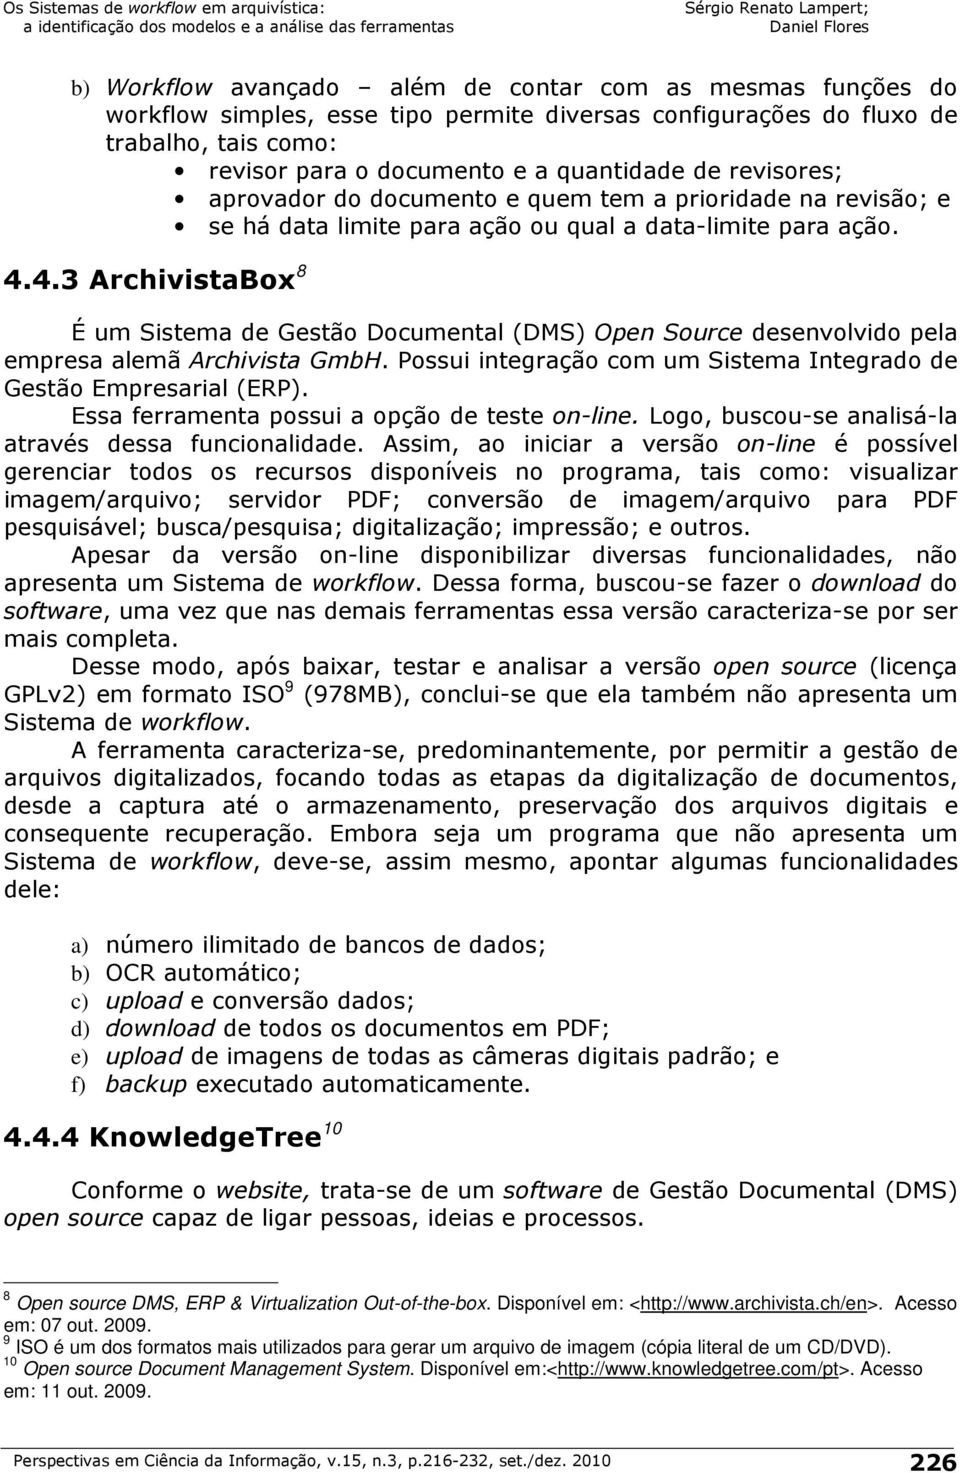 4.3 ArchivistaBox 8 É um Sistema de Gestão Documental (DMS) Open Source desenvolvido pela empresa alemã Archivista GmbH. Possui integração com um Sistema Integrado de Gestão Empresarial (ERP).